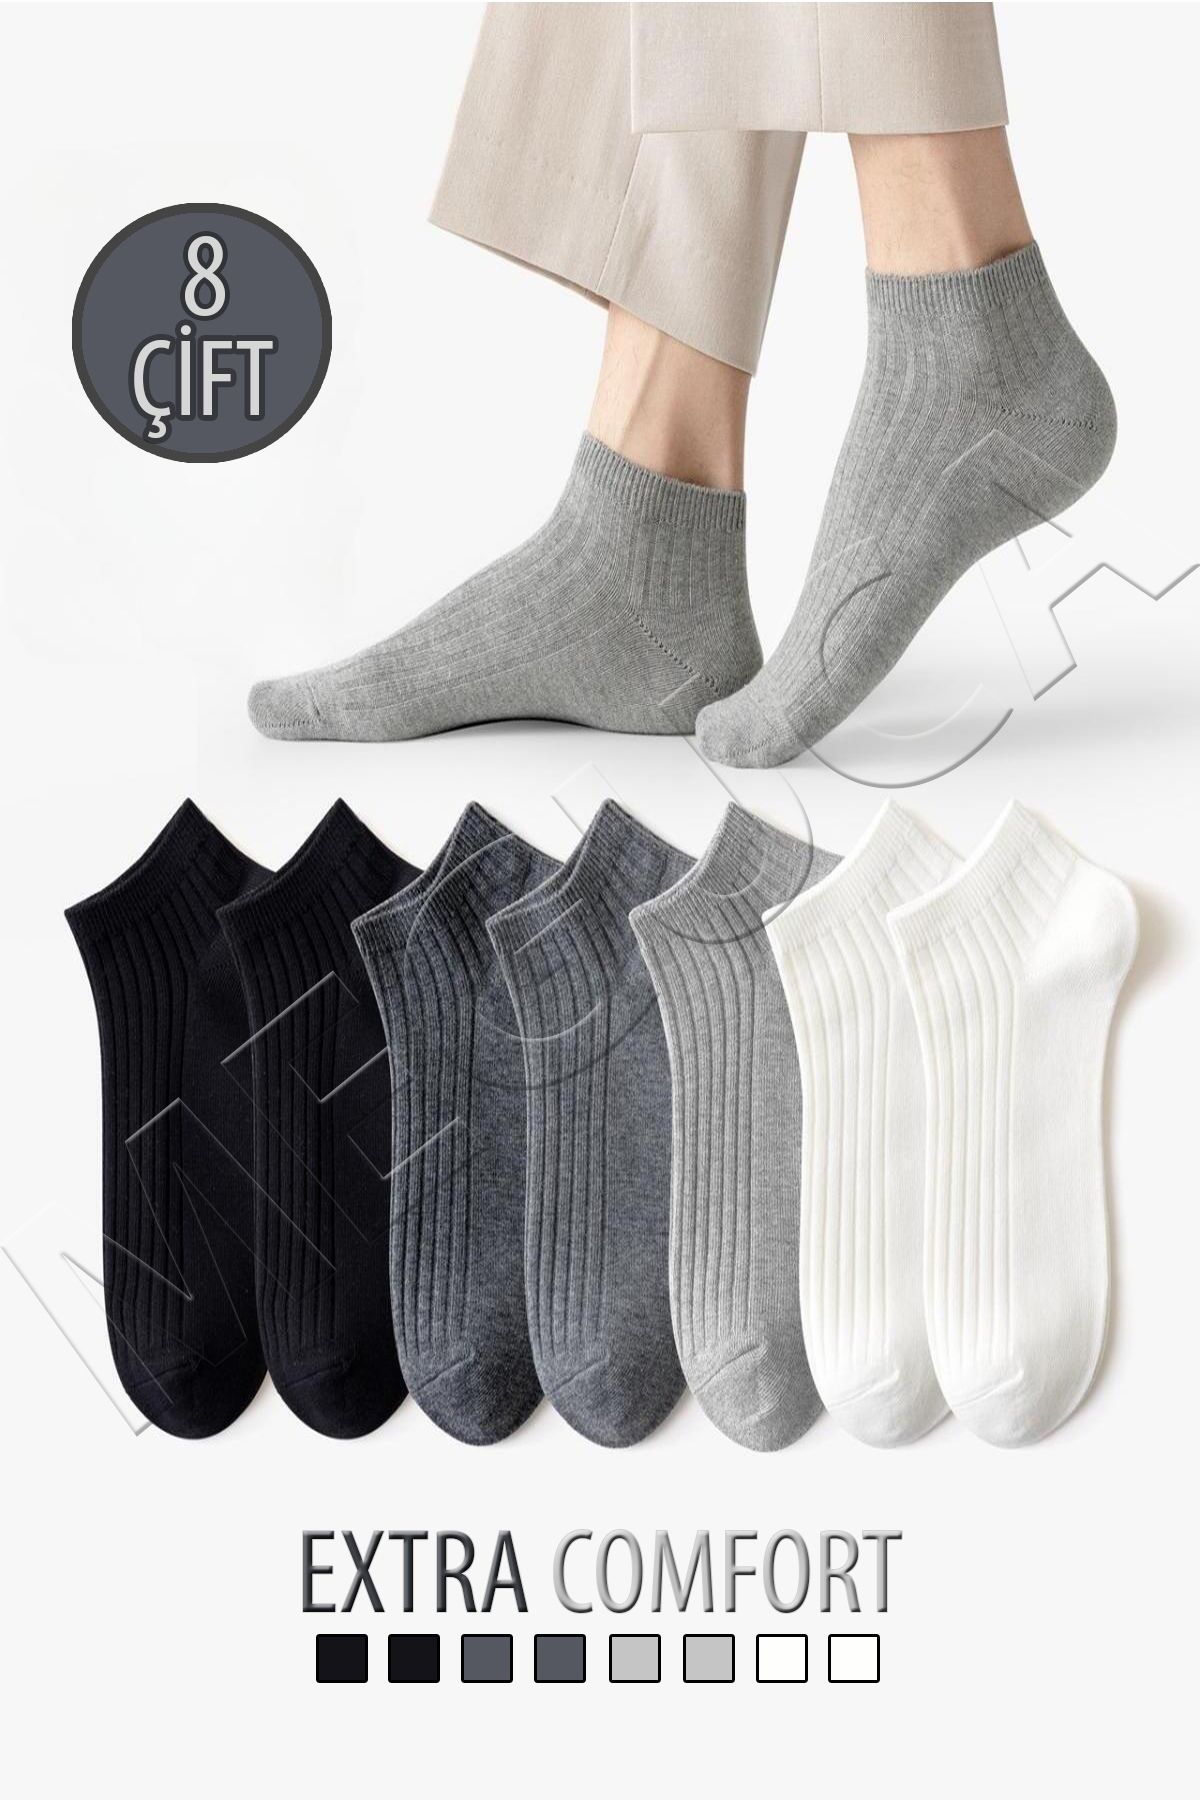 Meguca Socks Unisex Pamuklu Extra Konforlu ve Yumuşak Derbili Çorap Seti 8 Çift